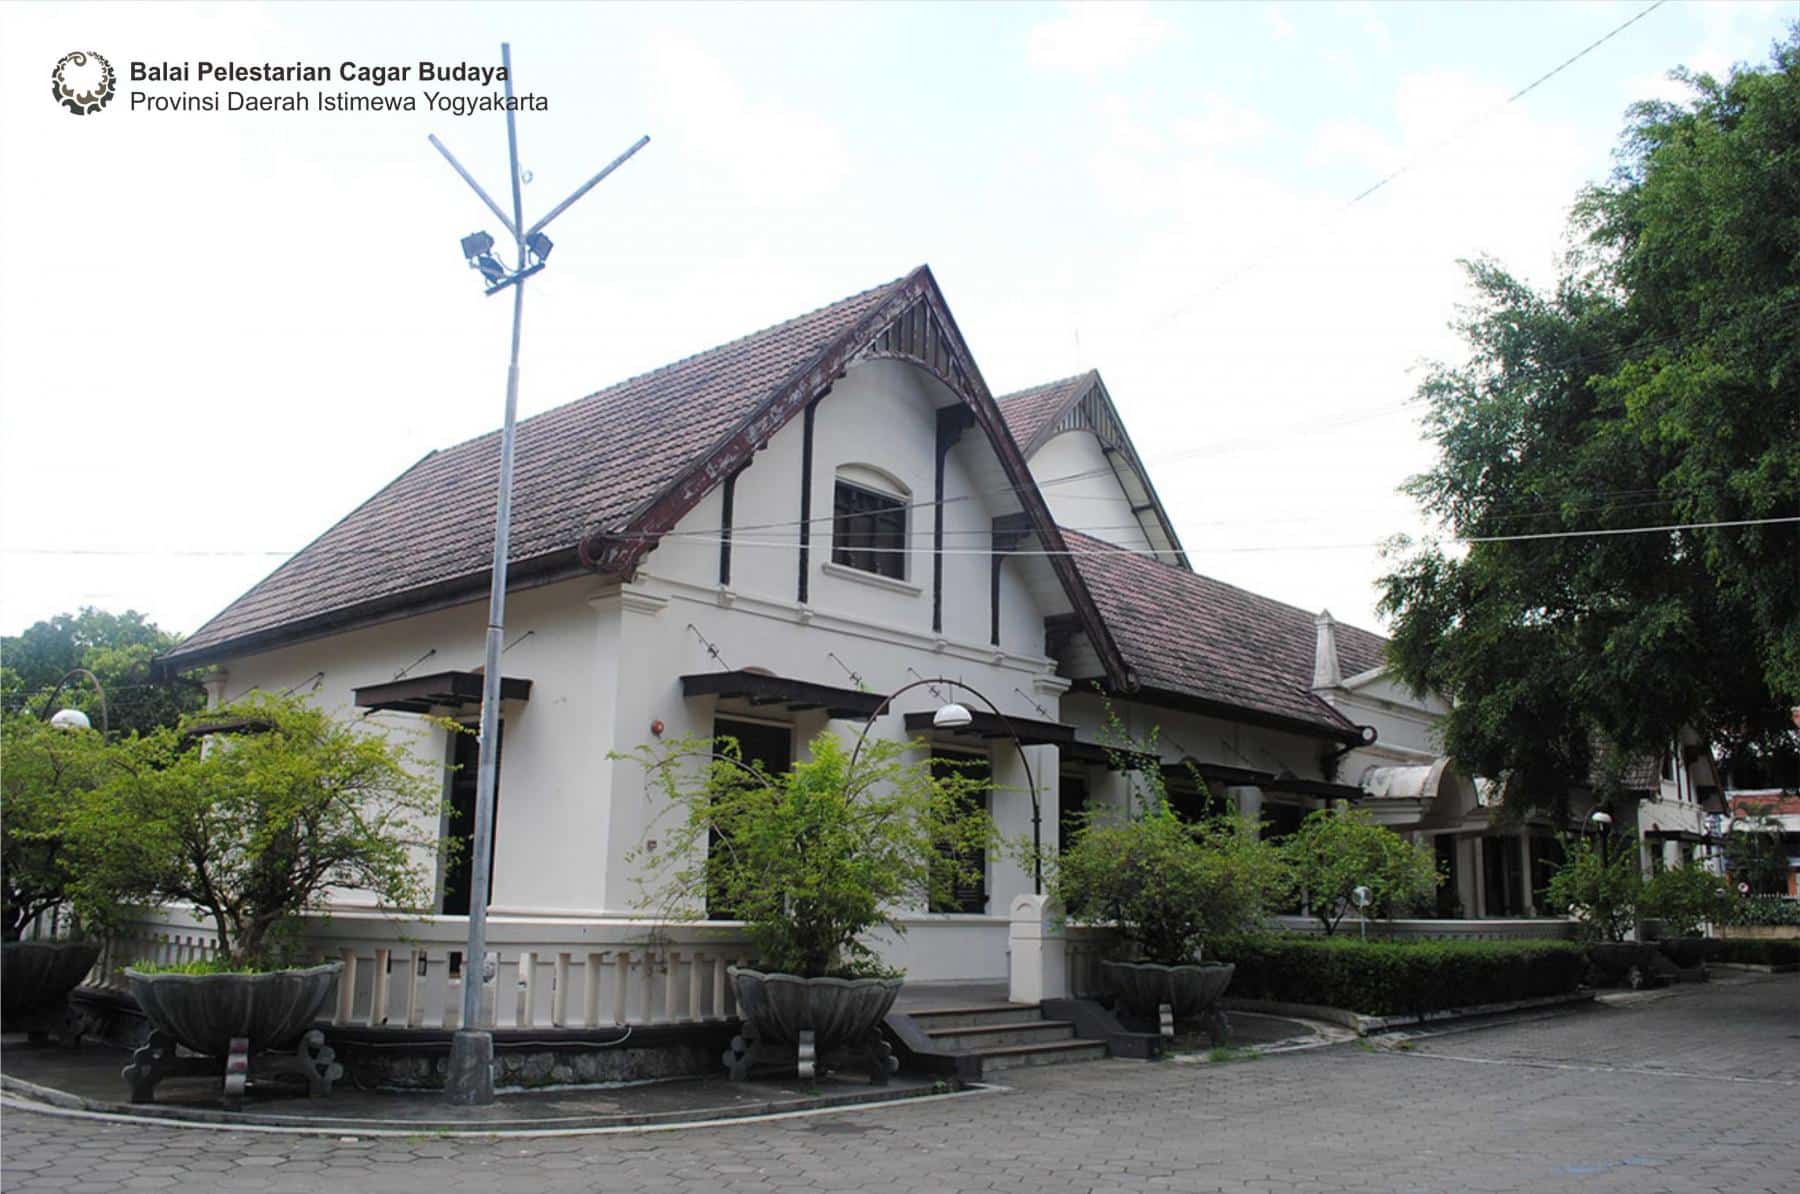 Kotabaru, tempat wisata gratis di Jogja yang ikonik dan Instagramable tanpa tiket masuk. (Dok bpcbdiy.kemdikbud.go.id)